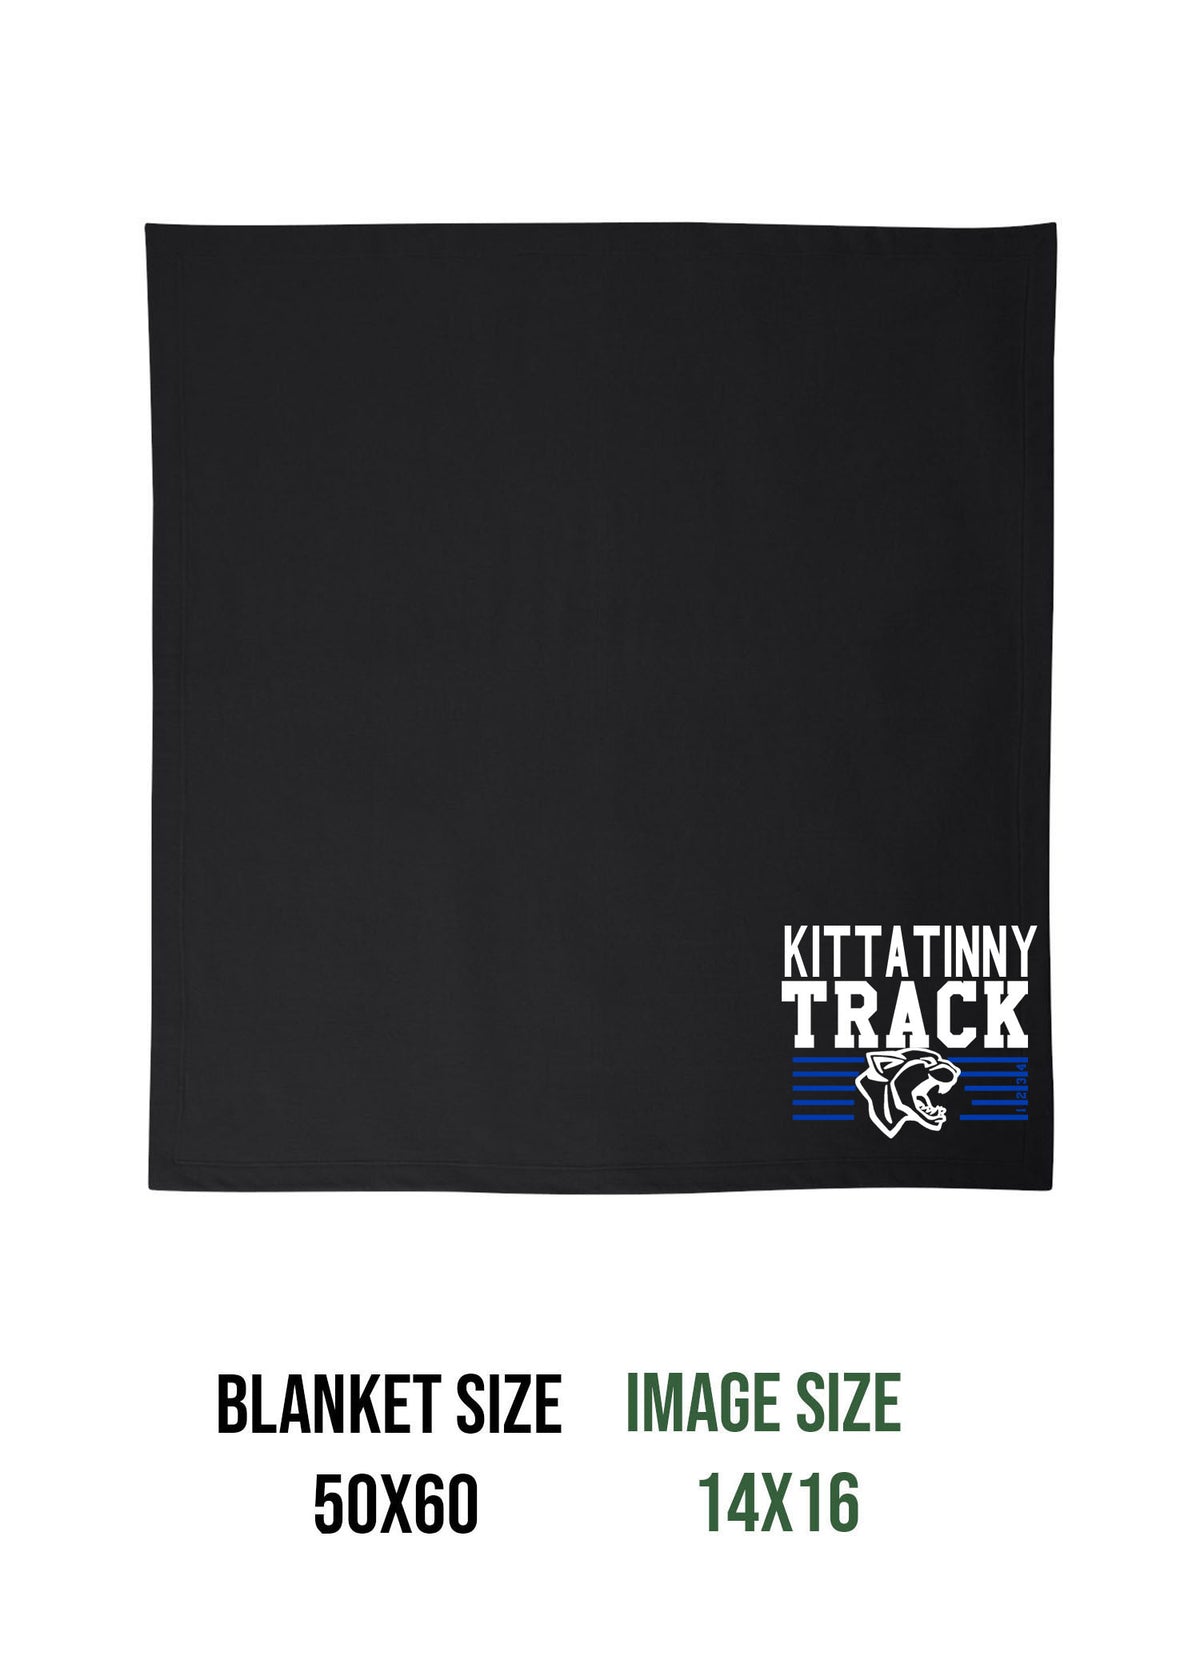 Kittatinny Track Design 5 Blanket